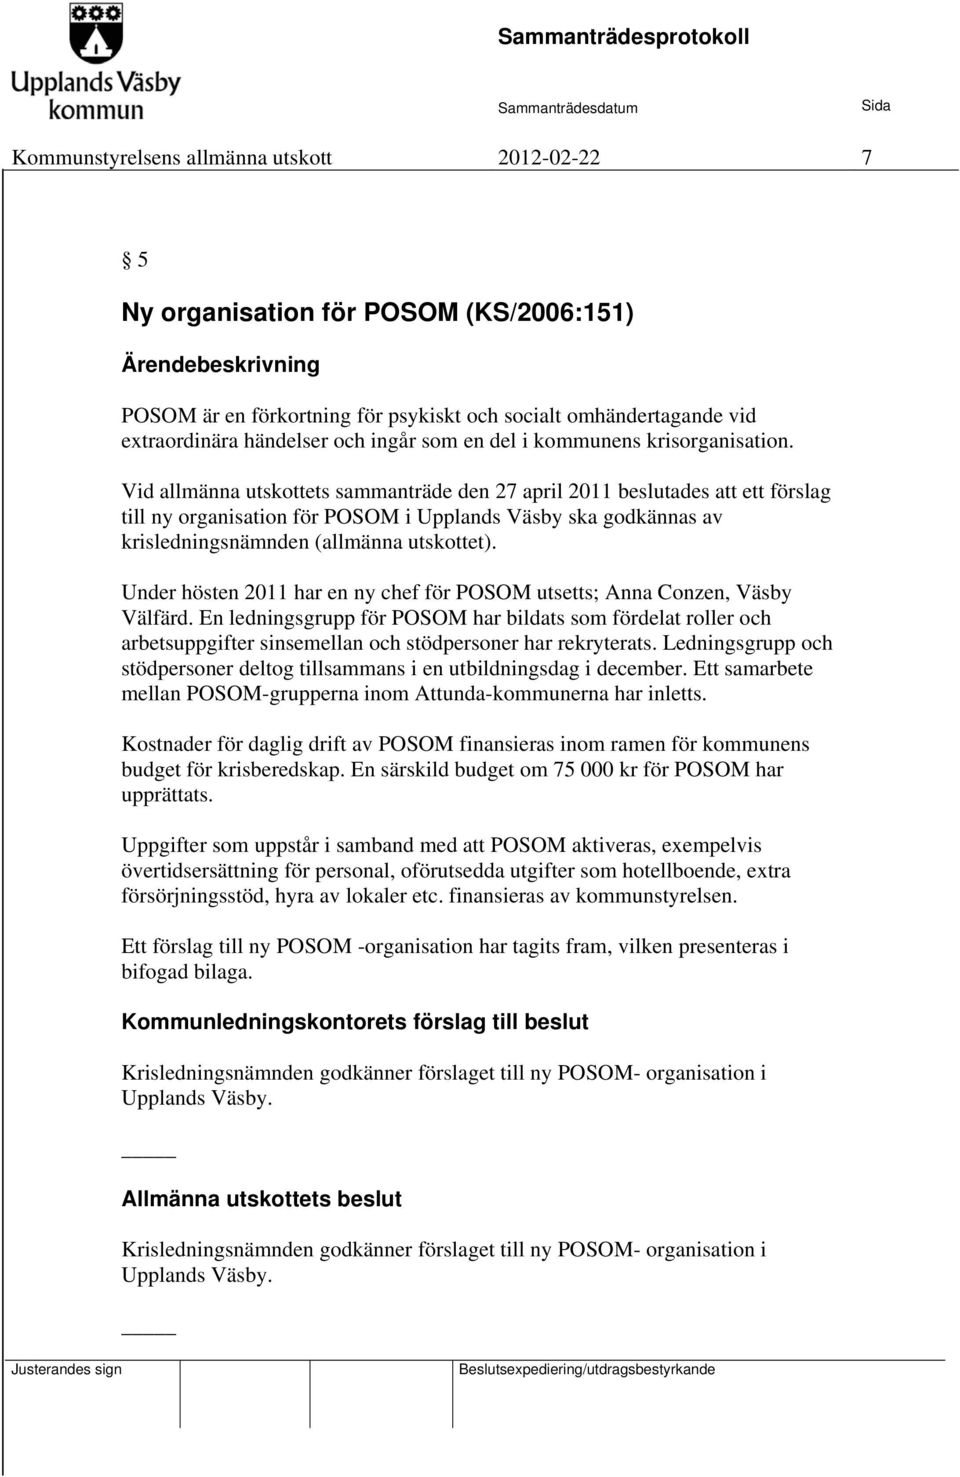 Vid allmänna utskottets sammanträde den 27 april 2011 beslutades att ett förslag till ny organisation för POSOM i Upplands Väsby ska godkännas av krisledningsnämnden (allmänna utskottet).